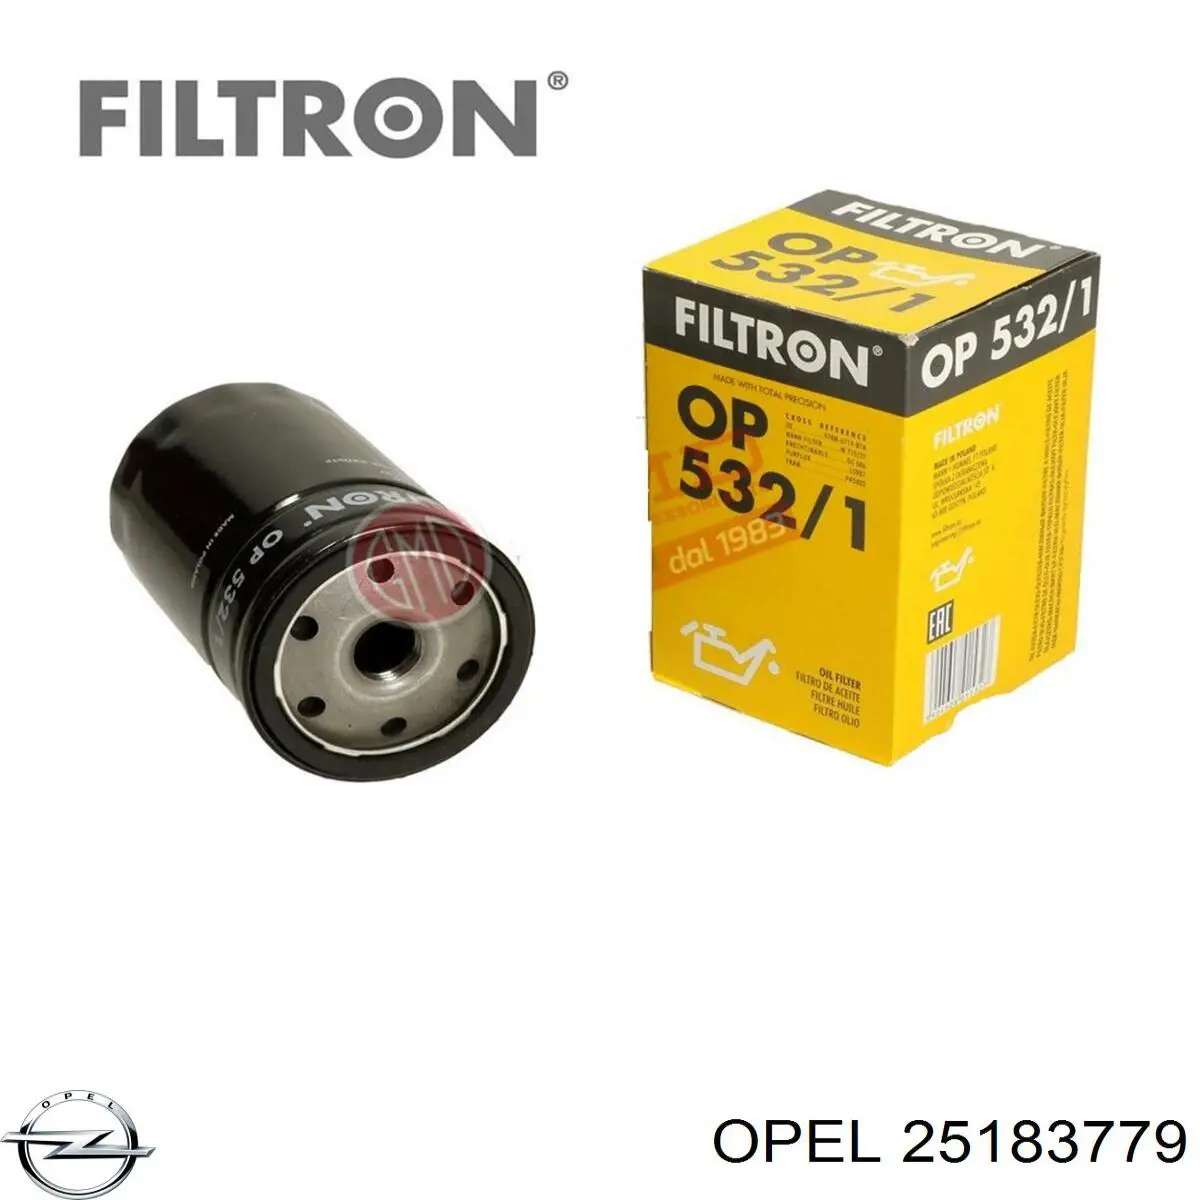 25183779 Opel filtro de aceite